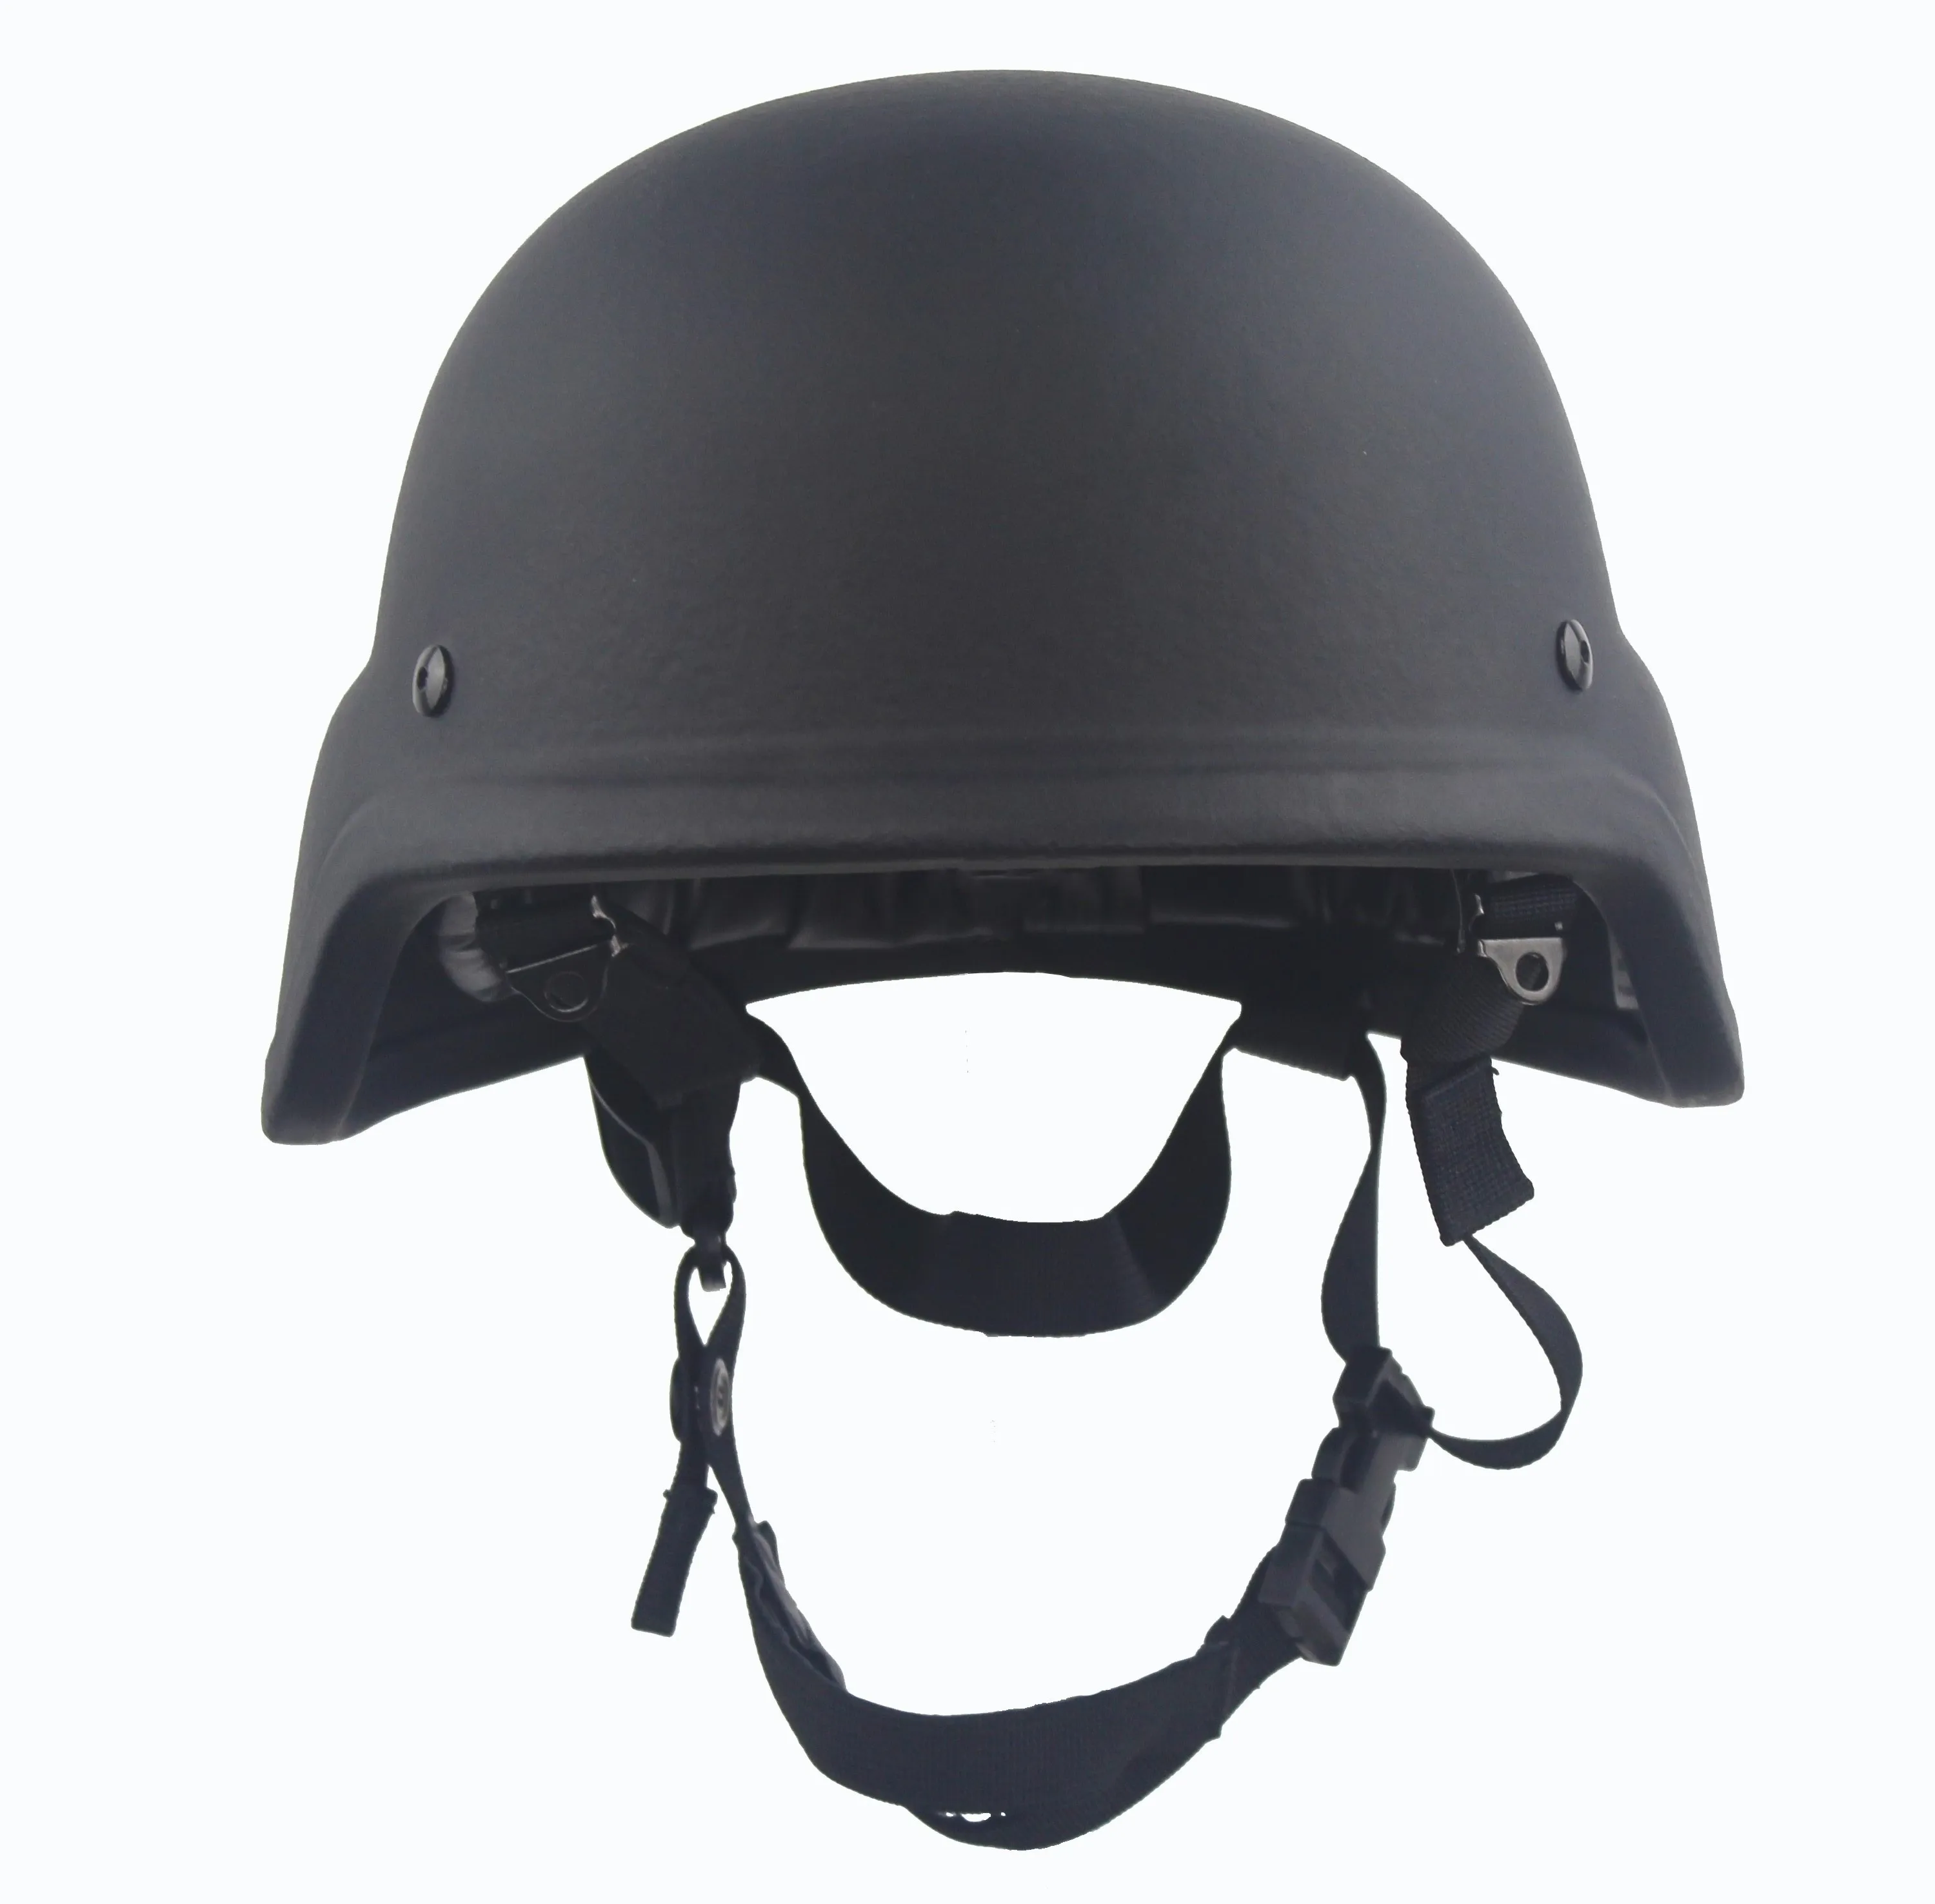 防弹头盔 - buy 防弹头盔,防弹头盔,军用头盔 product